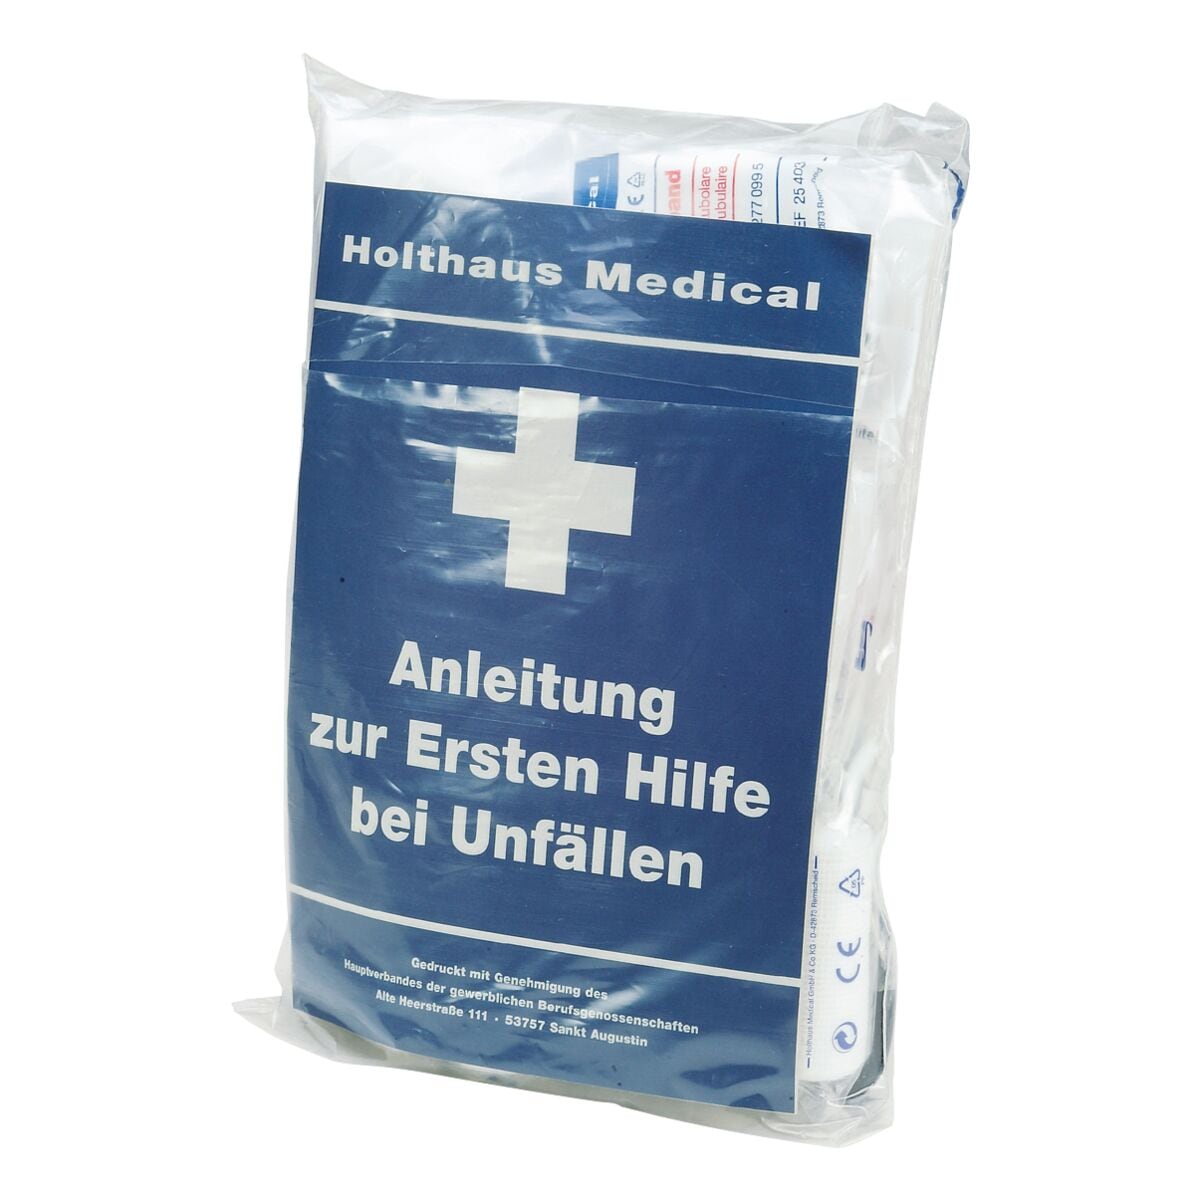 Holthaus Medical 64-teiliges Fllsortiment DIN 13157 fr Erste Hilfe